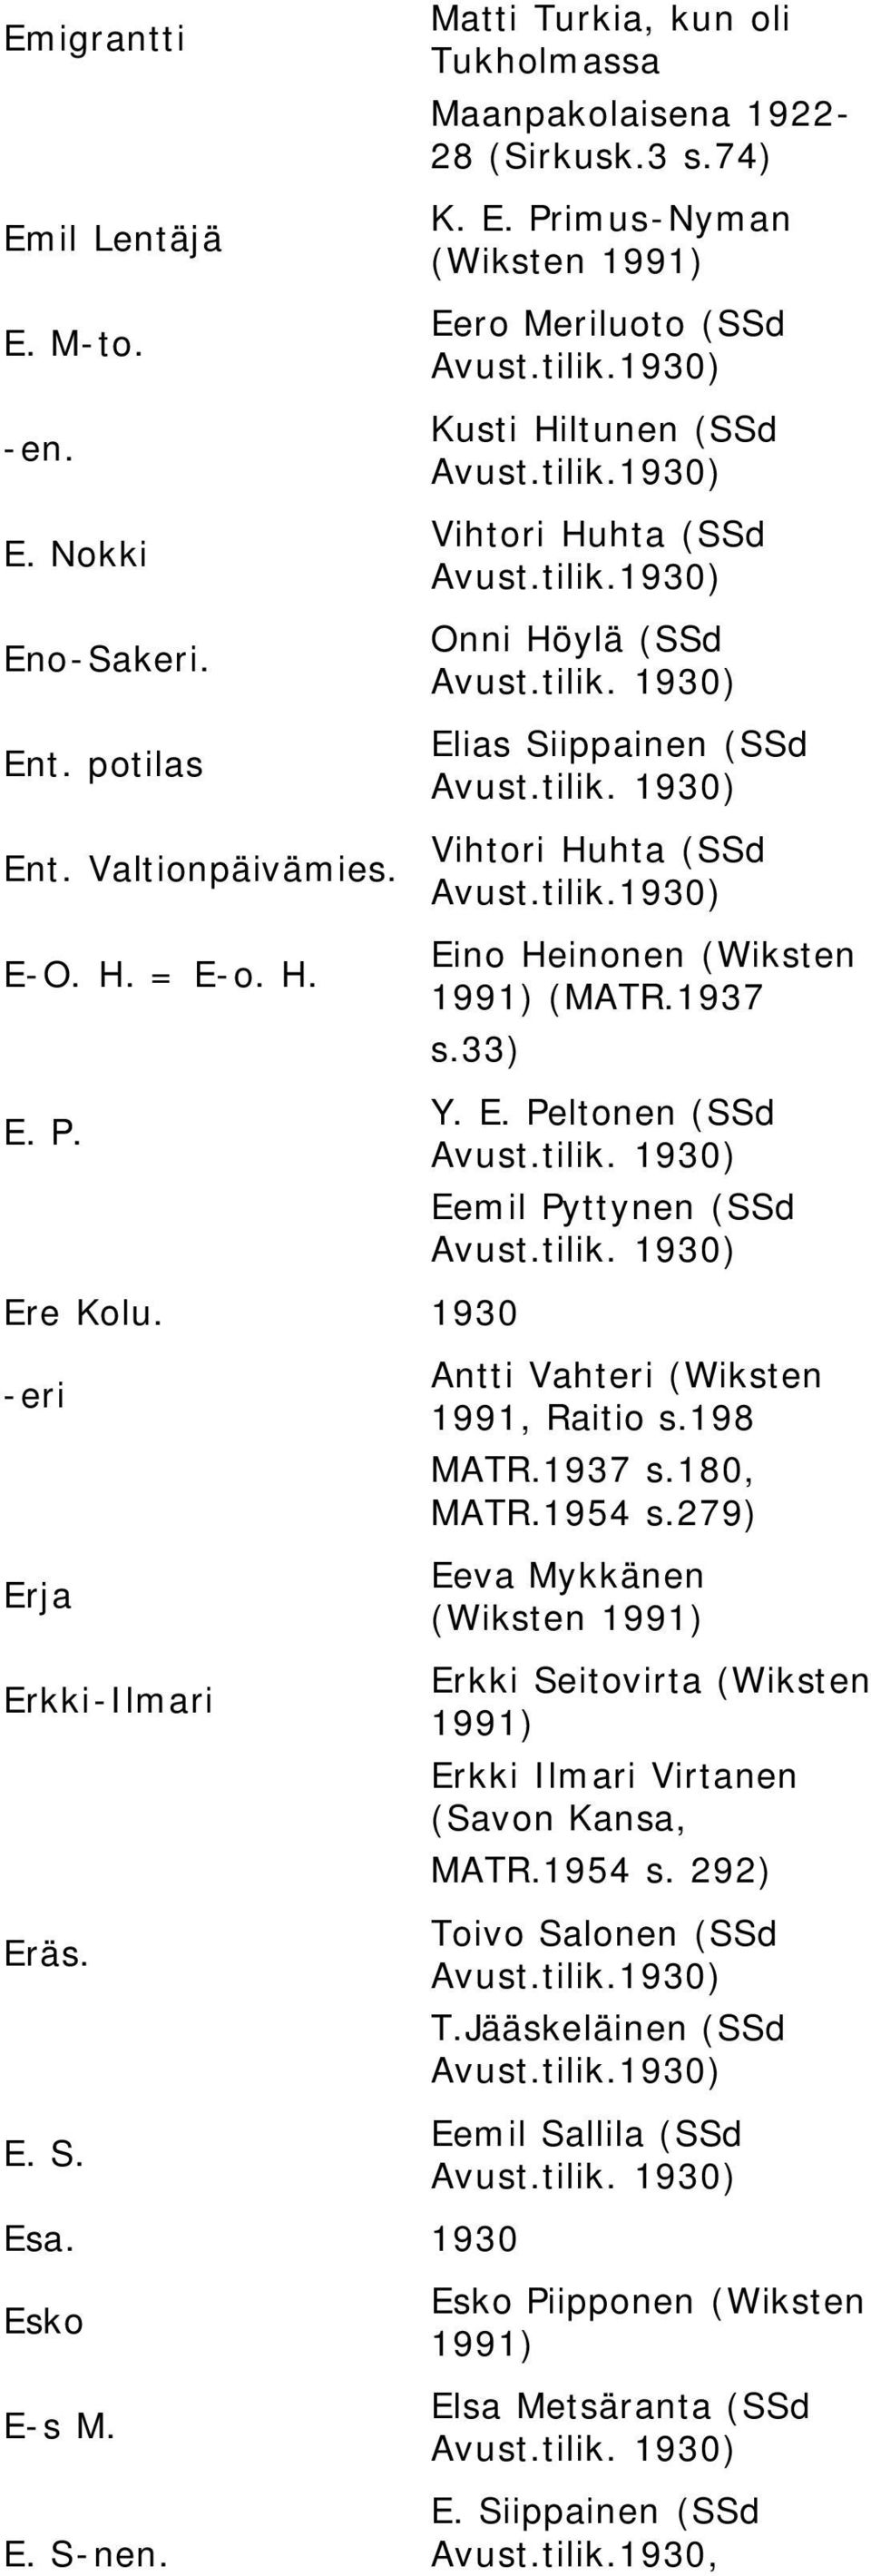 Primus-Nyman (Wiksten Eero Meriluoto (SSd Kusti Hiltunen (SSd Vihtori Huhta (SSd Onni Höylä (SSd Elias Siippainen (SSd Vihtori Huhta (SSd Eino Heinonen (Wiksten (MATR.1937 s.33) Y. E. Peltonen (SSd Eemil Pyttynen (SSd Antti Vahteri (Wiksten 1991, Raitio s.